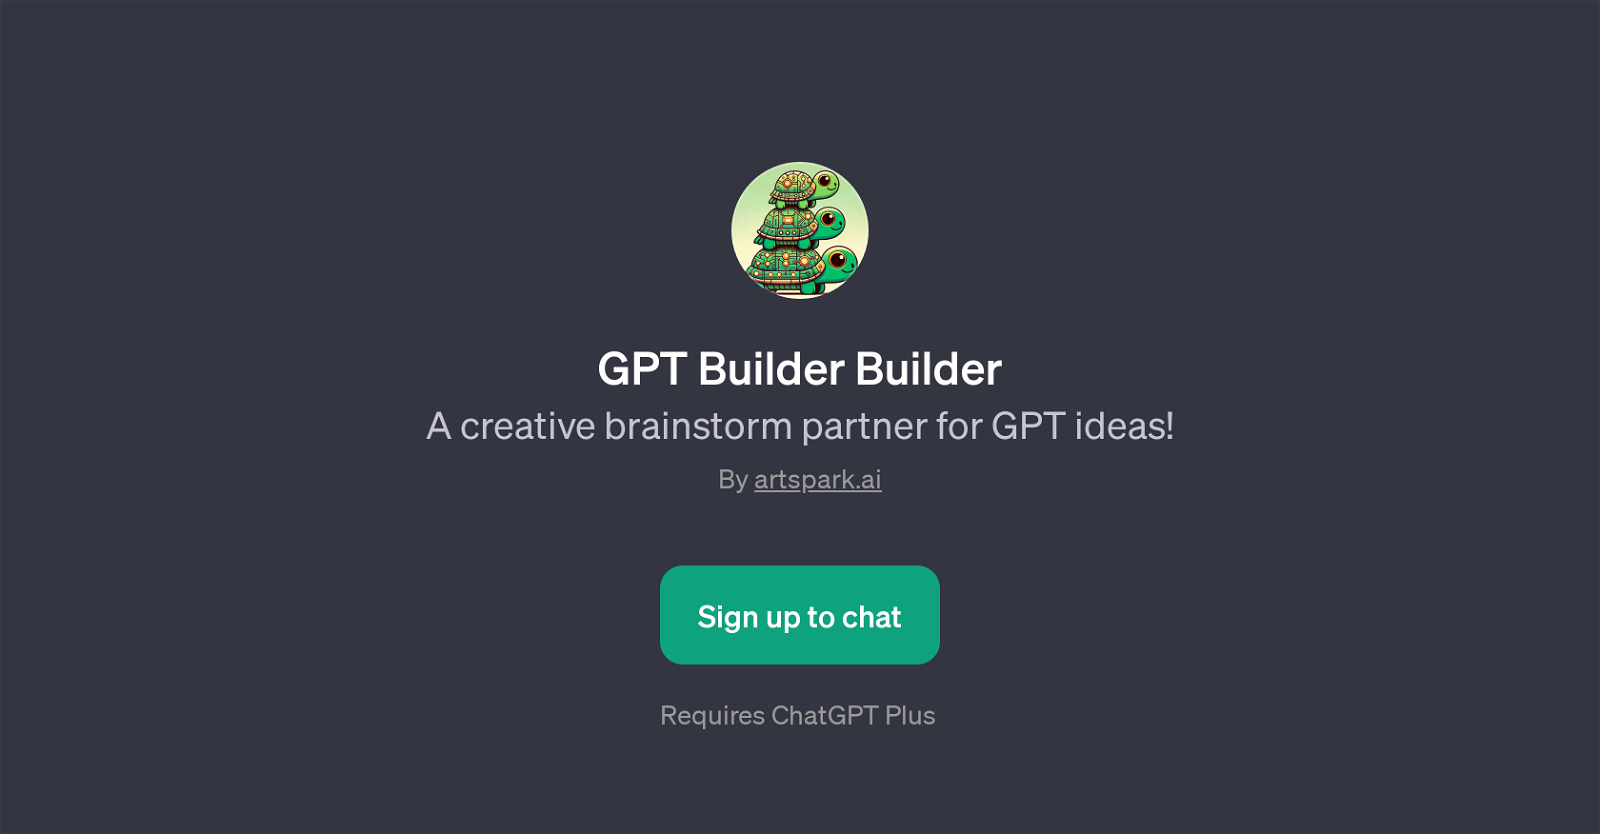 GPT Builder Builder website